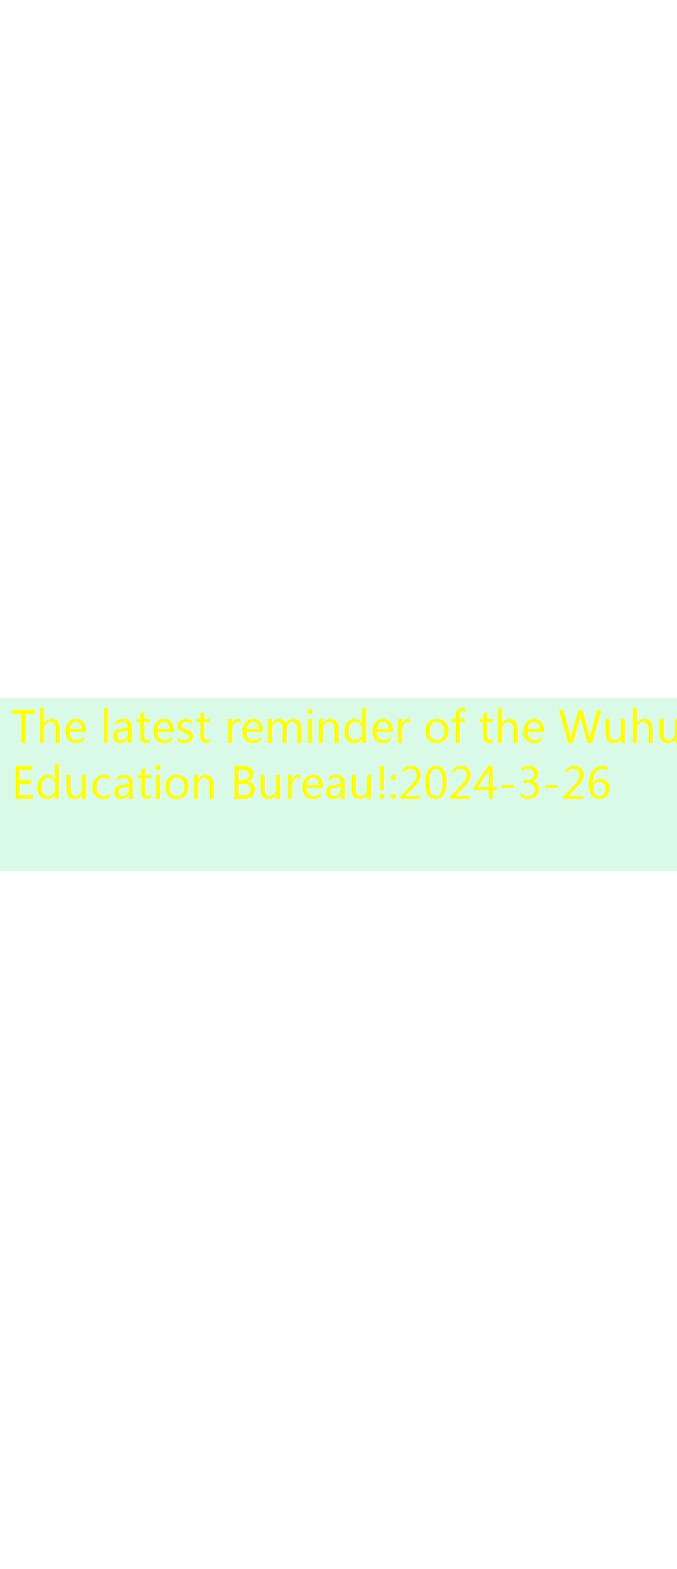 The latest reminder of the Wuhu Education Bureau!